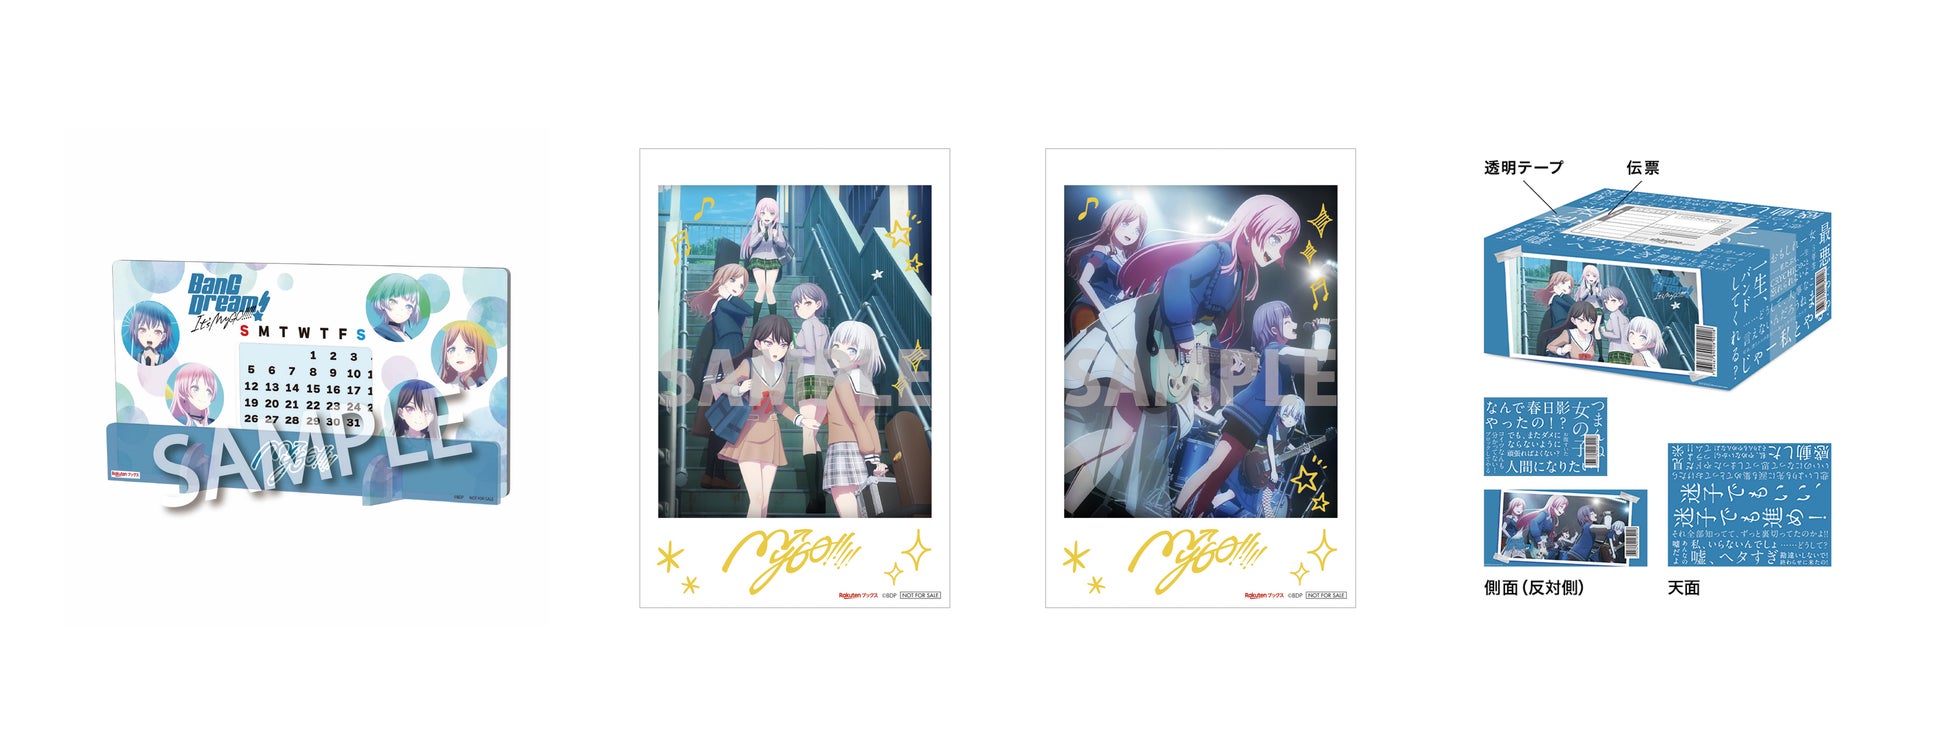 「楽天ブックス」、TVアニメ『BanG Dream! It’s MyGO!!!!!』Blu-ray上下巻の同時購入特典および限定先着特典...